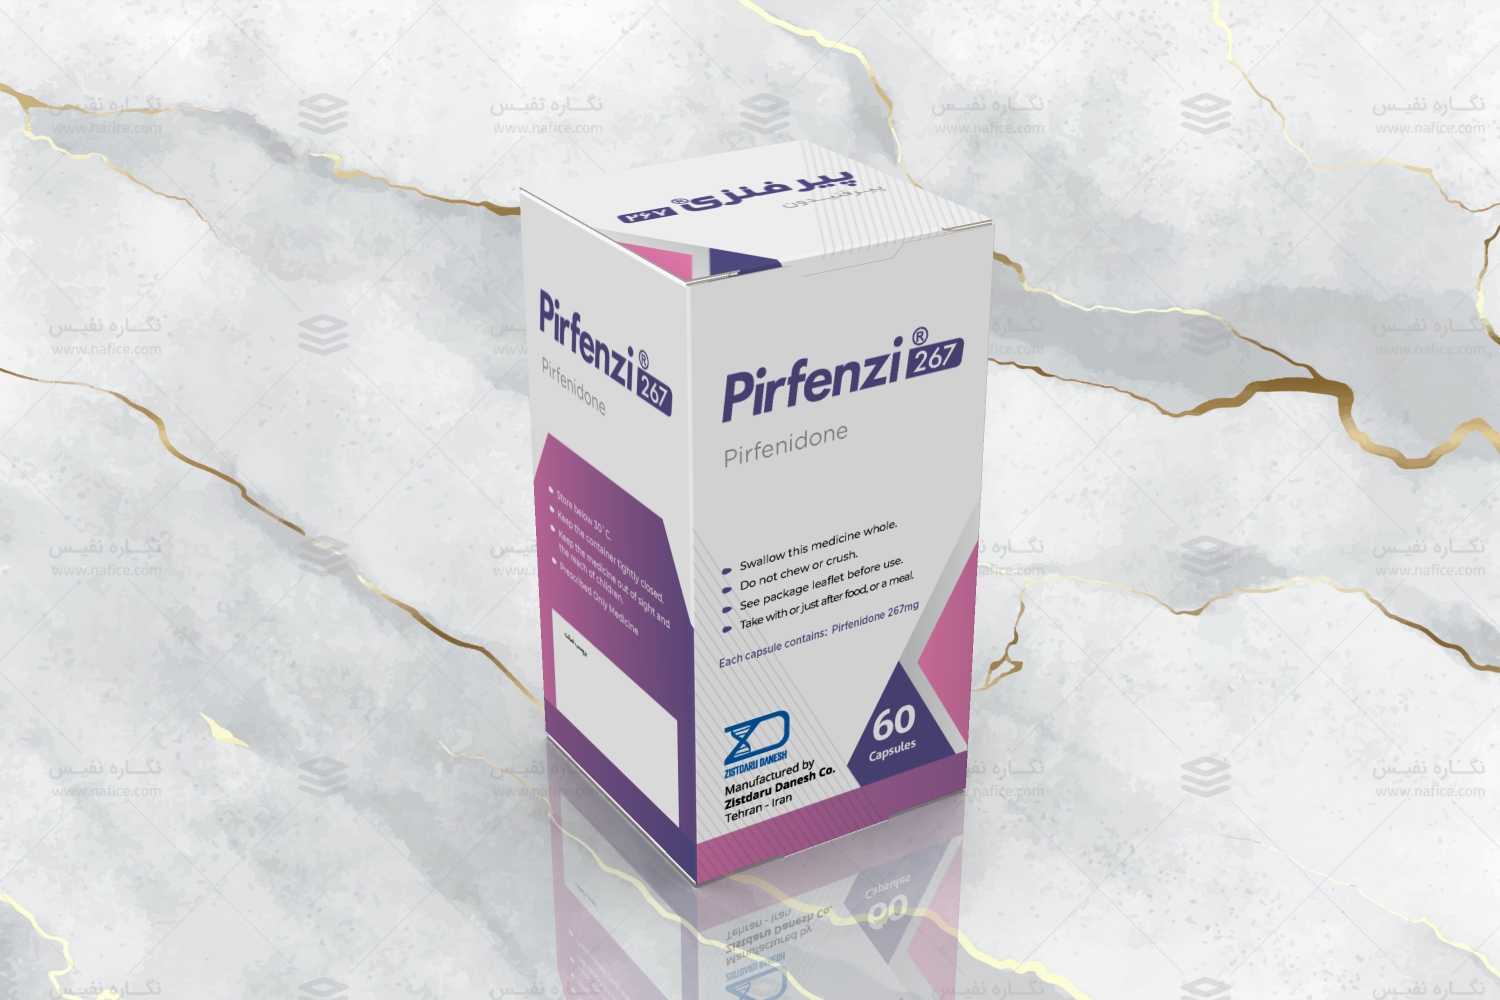 Pirfenzy 112 جعبه دارویی پیرفنزی شرکت زیست دارو دانش